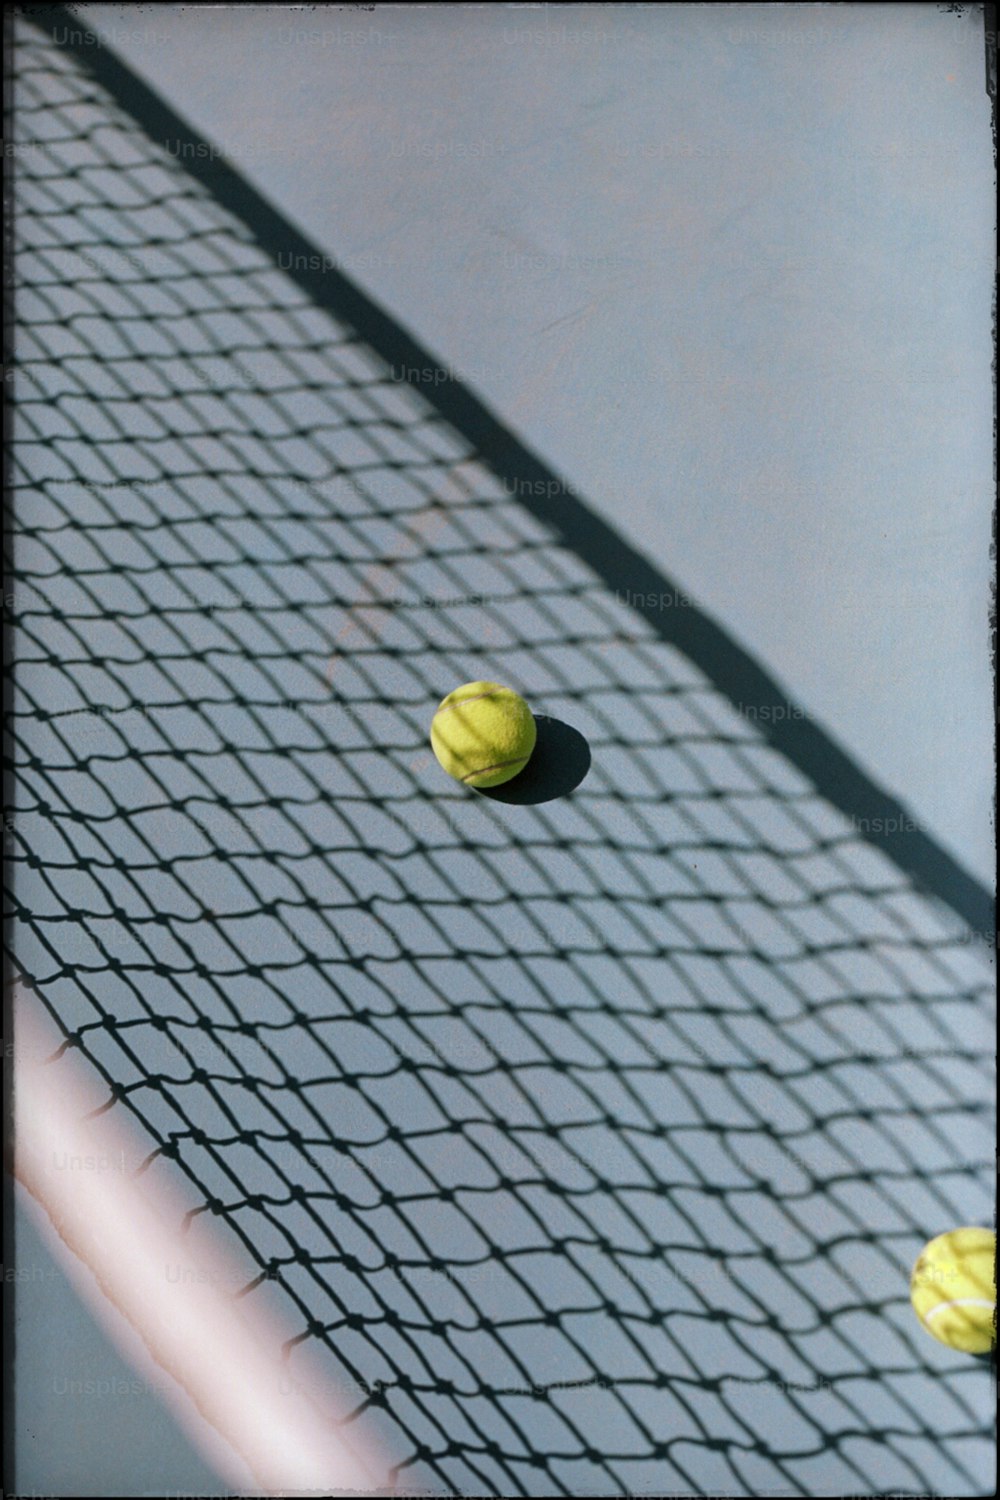 Tres pelotas de tenis en una red de cancha de tenis